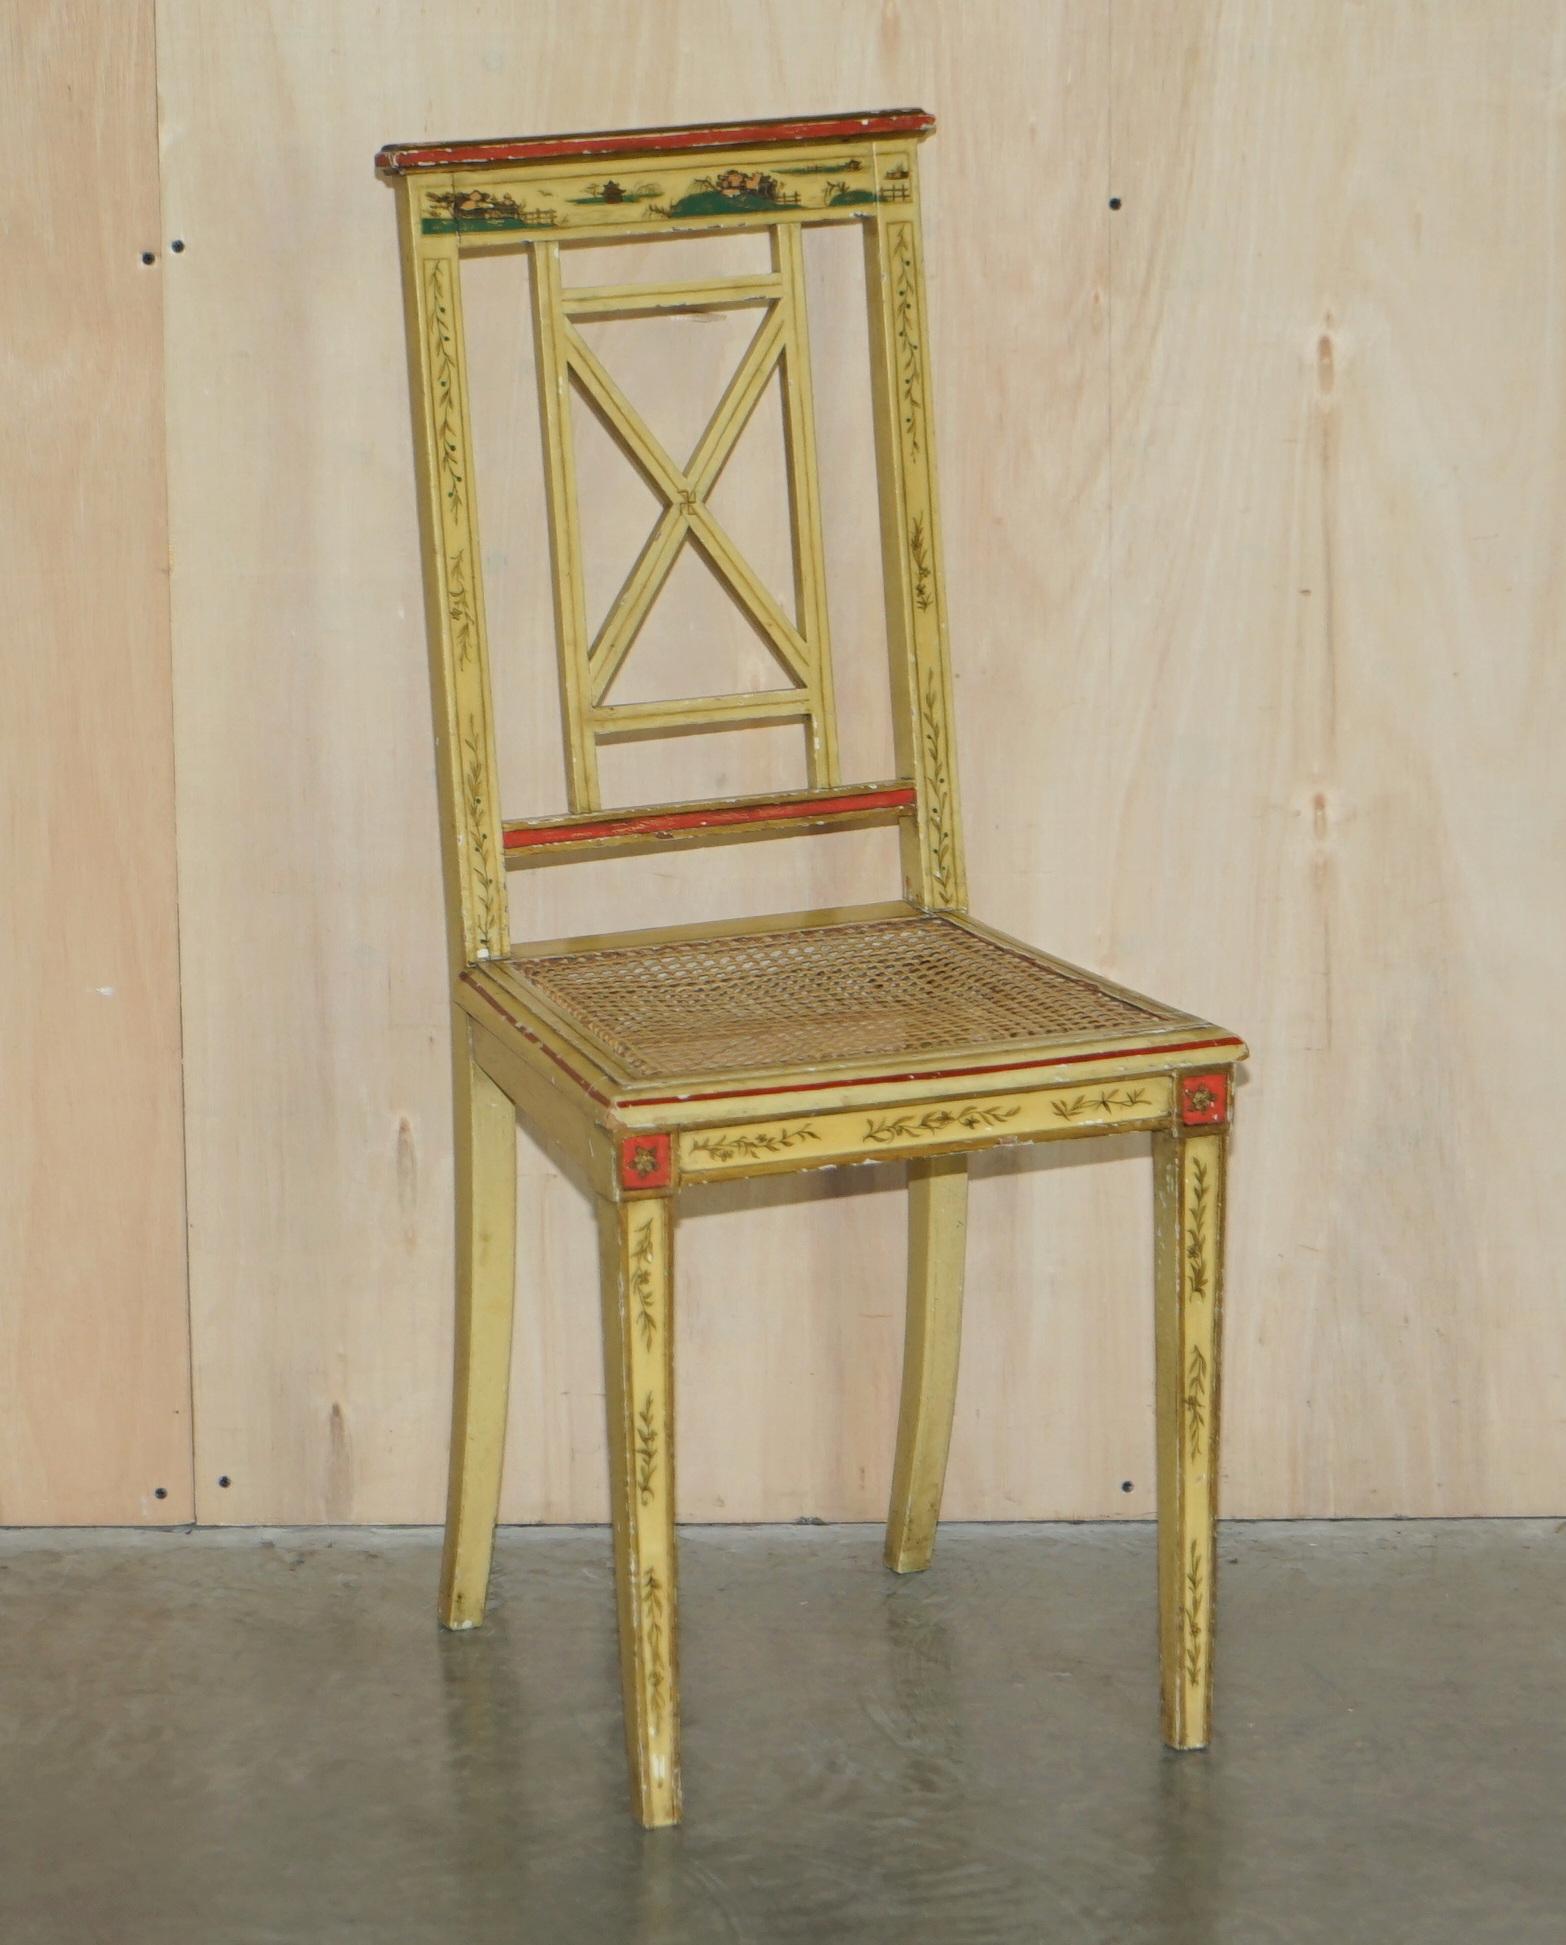 Wir freuen uns, dieses atemberaubende Paar chinesischer Export-Bergère-Stühle (ca. 1880-1900) mit handbemalter und lackierter Oberfläche zum Verkauf anbieten zu können

Ein sehr gut aussehendes und dekoratives Paar Stühle, sie sind eine gute helle